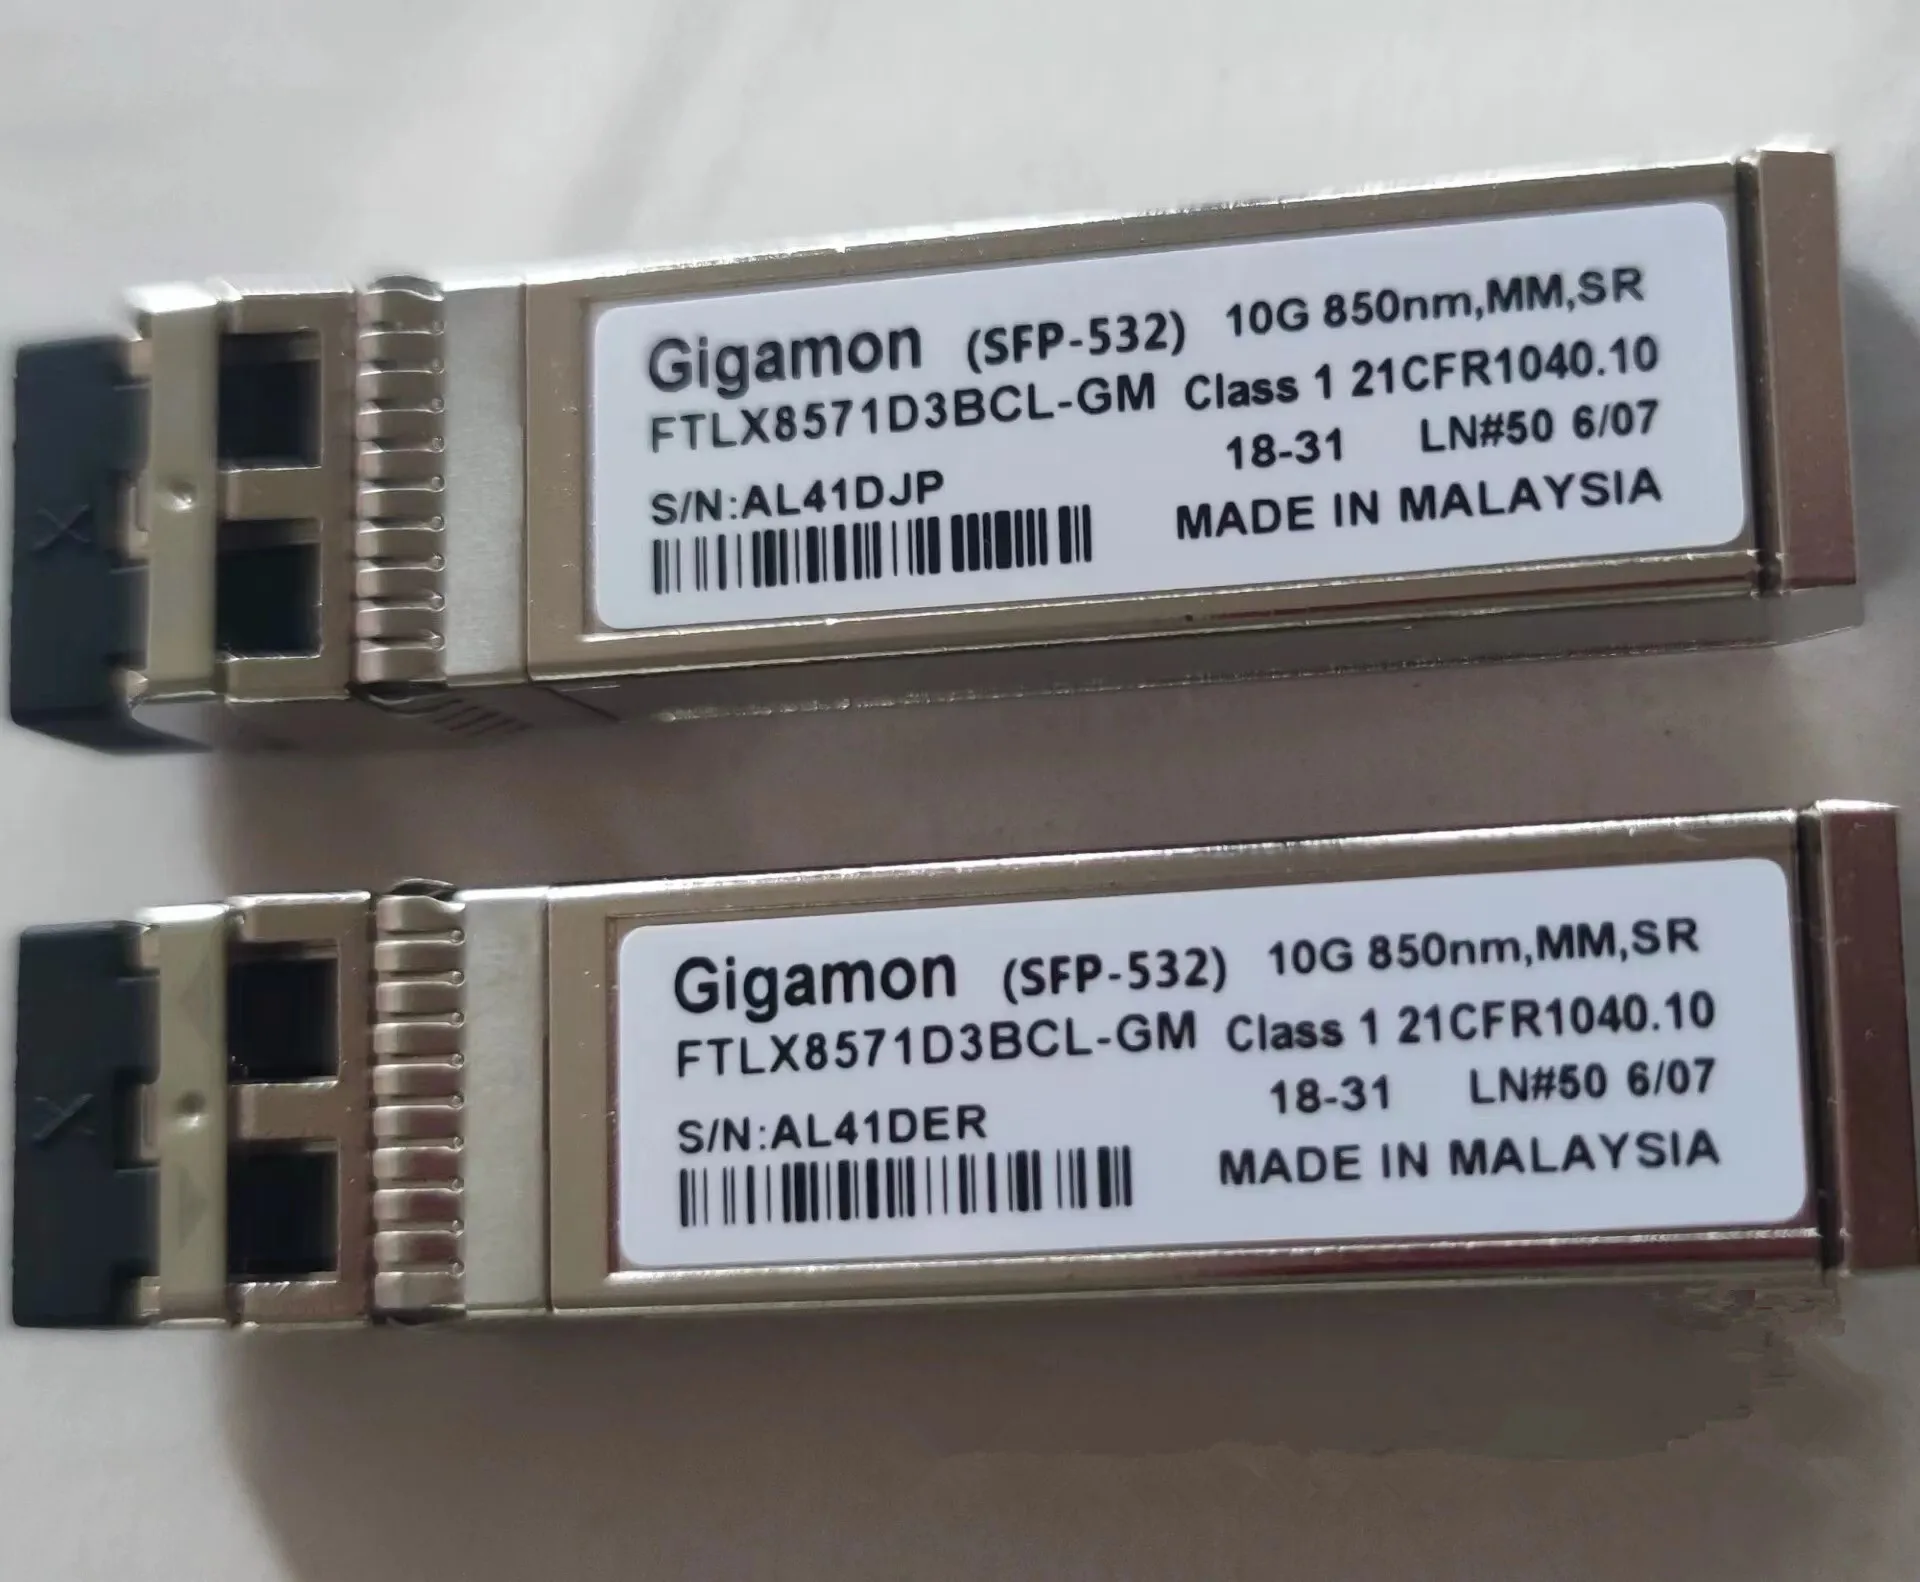 Gigamon 10GB SFP Fiber Module FTLX8571D3BCL-GM SFP-532 10G 850NM MM SR Gigamon 10g Transceiver Switch